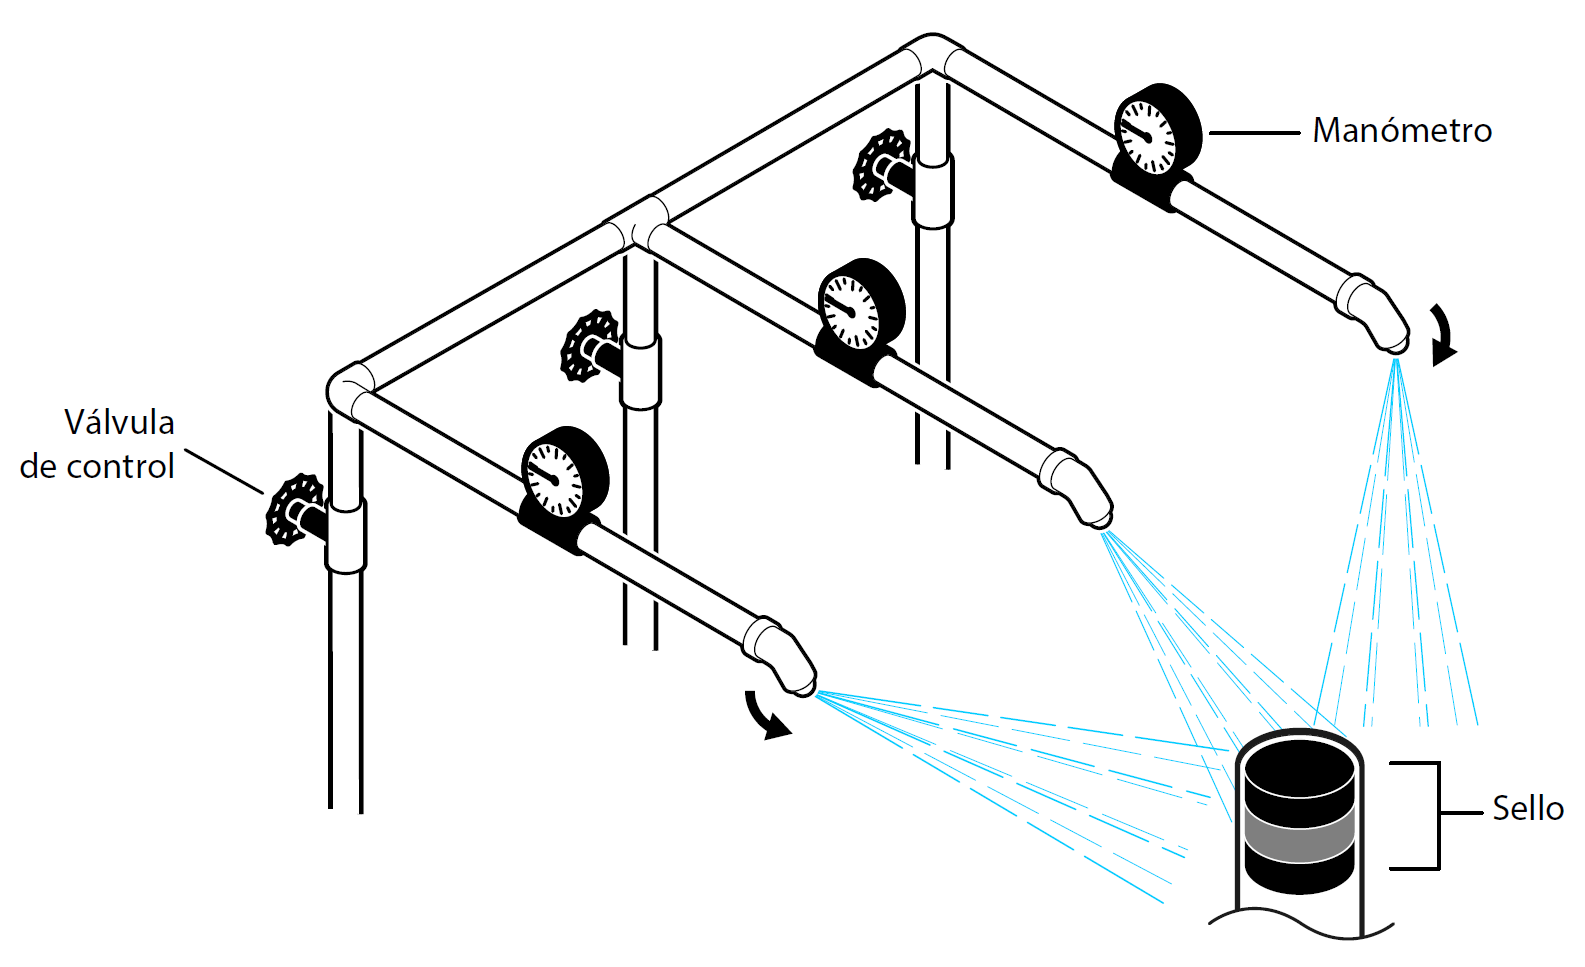 Una ilustración con etiquetas de un aparato hidrostático con manómetros